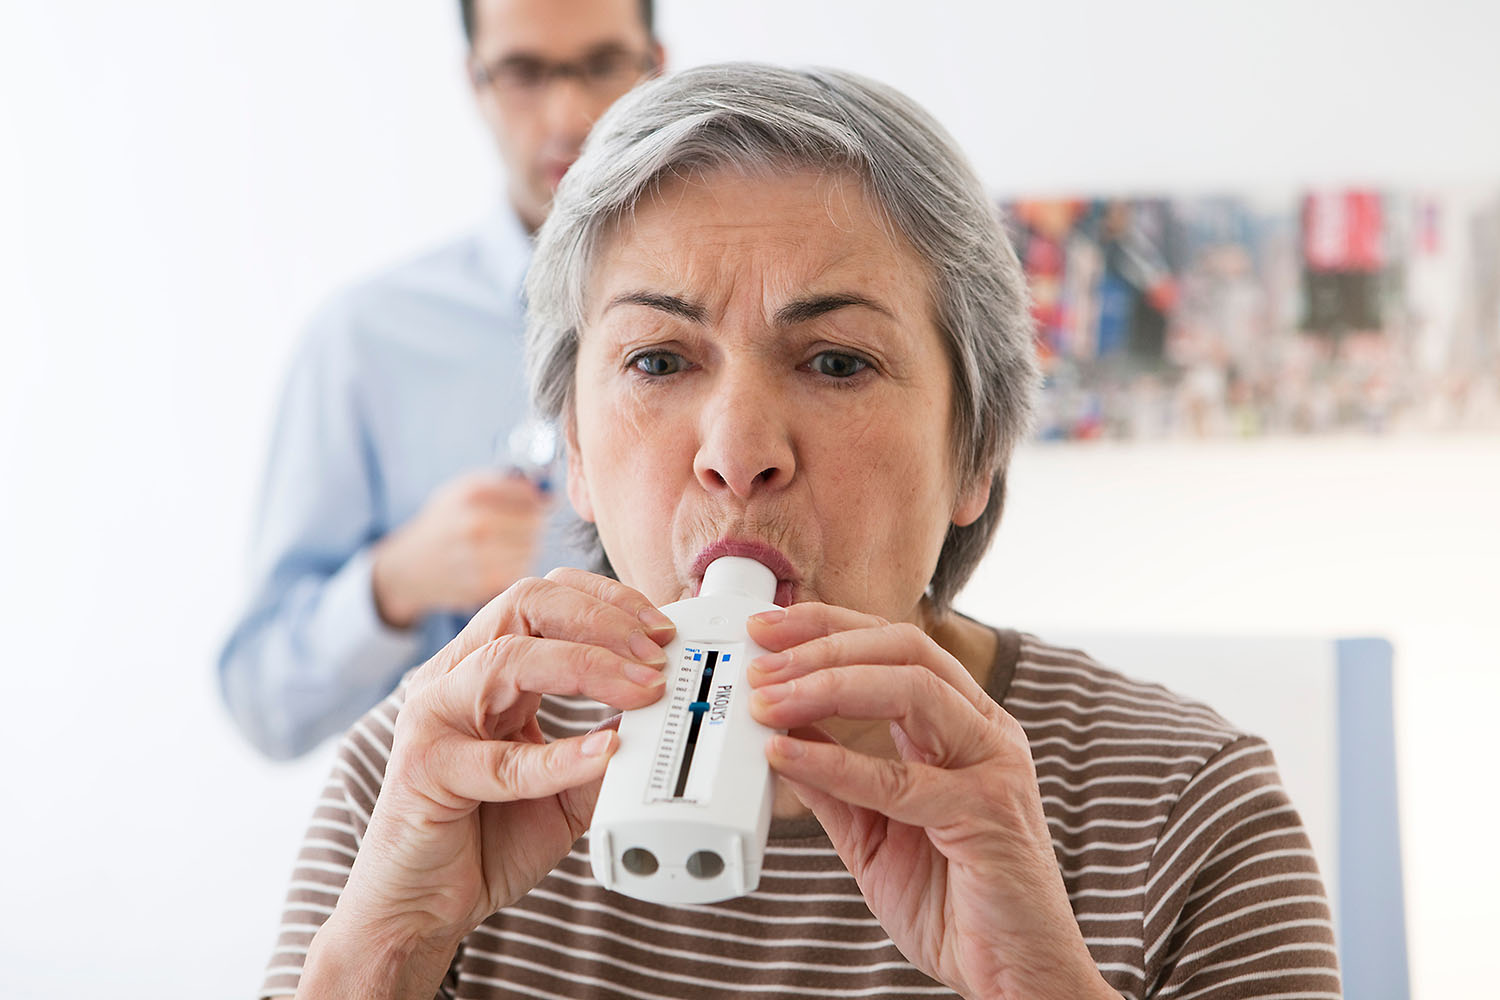 Das Disease-Management-Programm zu COPD ist an den neuesten medizinischen Wissensstand angepasst worden und gilt ab 1. April. Besonders betrifft das die Hinweise zur medikamentösen Therapie. „Der Hausarzt“ hat die wichtigsten Änderungen zusammengefasst. 